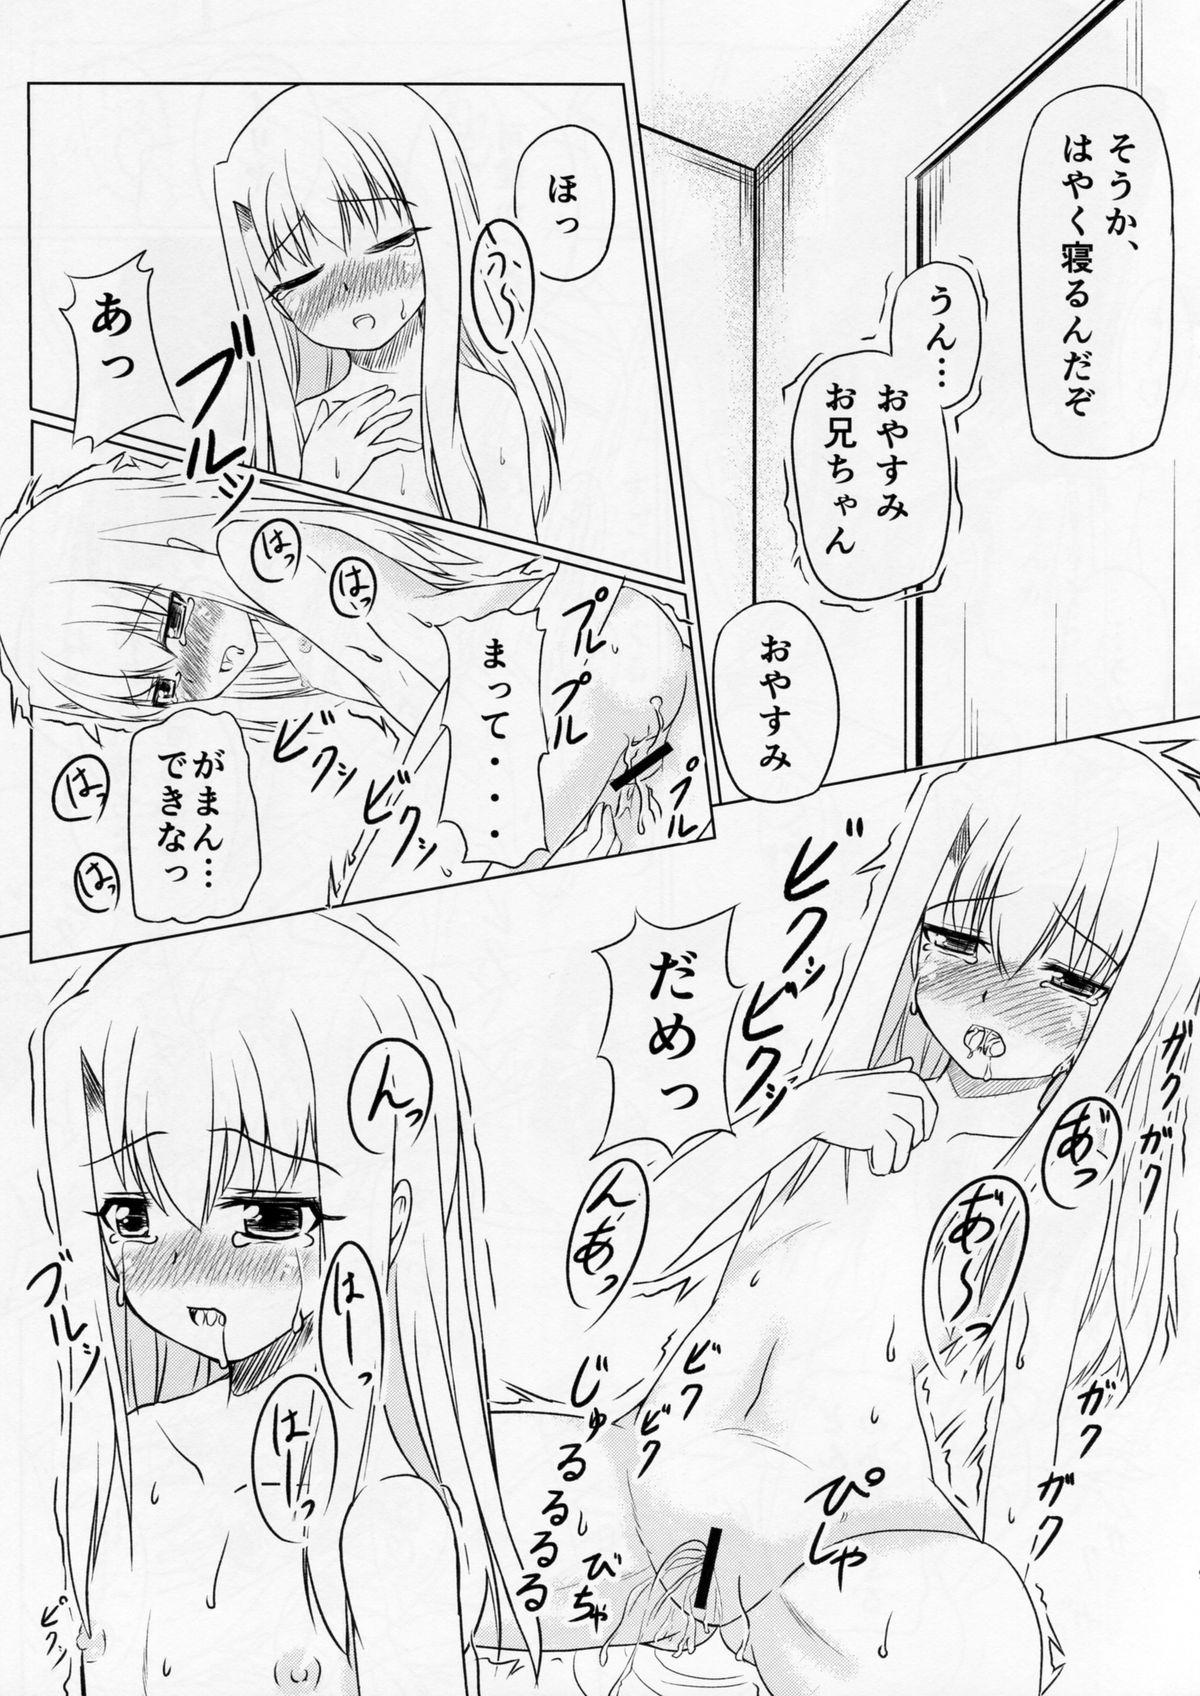 Nalgas Miyu no Omoi - Fate kaleid liner prisma illya Perfect Body Porn - Page 8